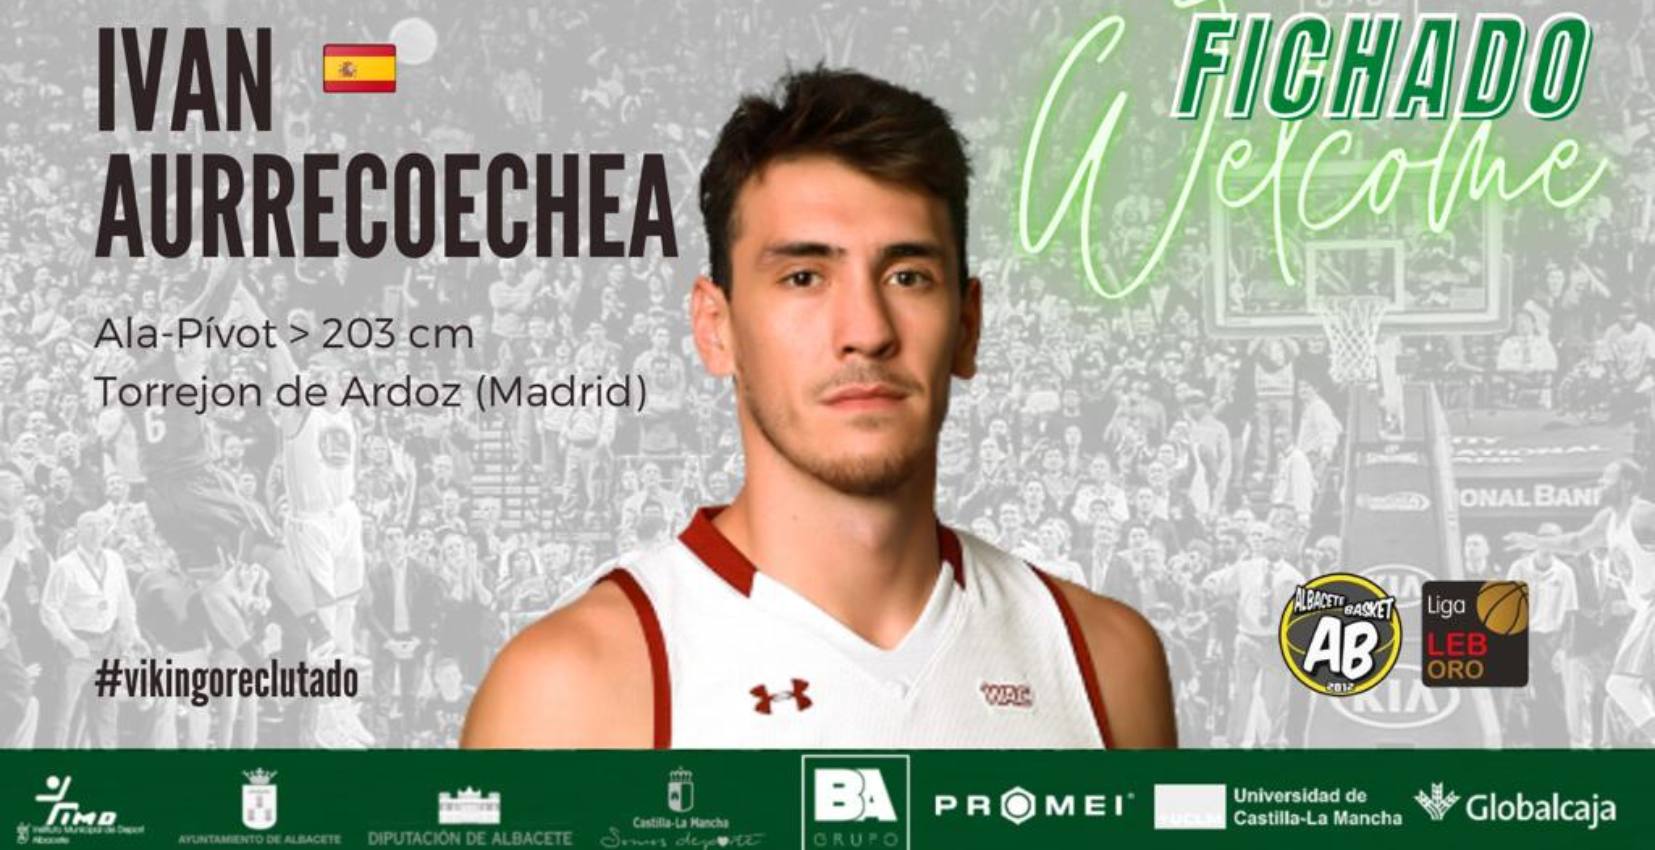 El Albacete Basket ficha a Iván Aurrecoechea para la temporada 22/23.